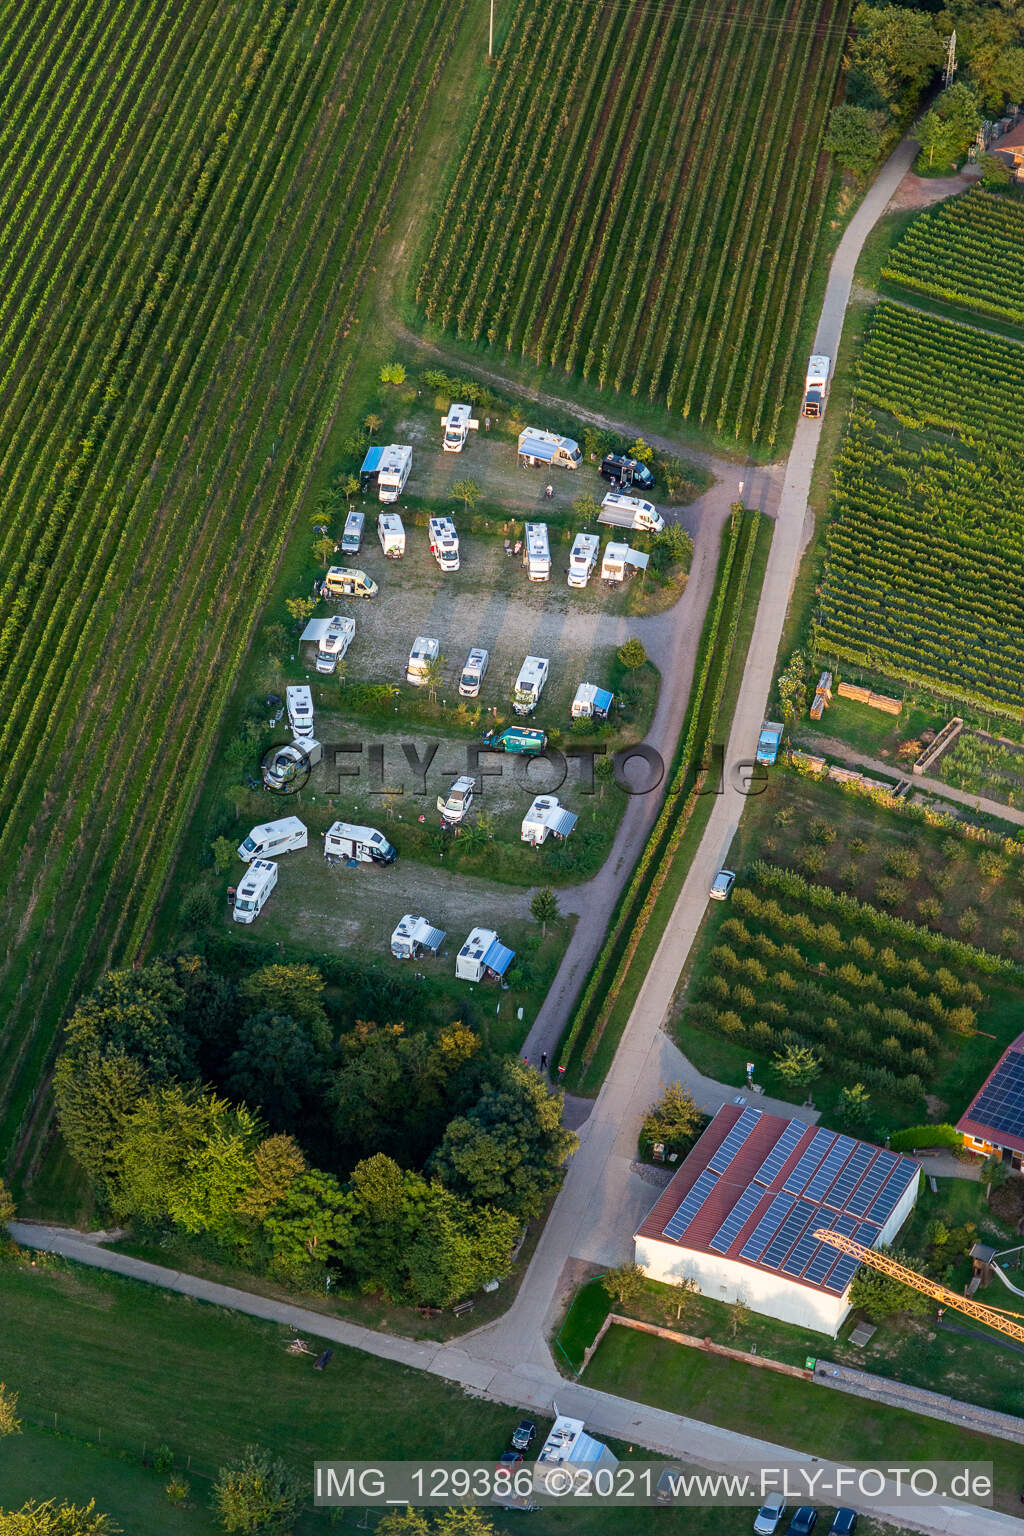 Stationnement camping-car à Dierbach dans le département Rhénanie-Palatinat, Allemagne d'en haut